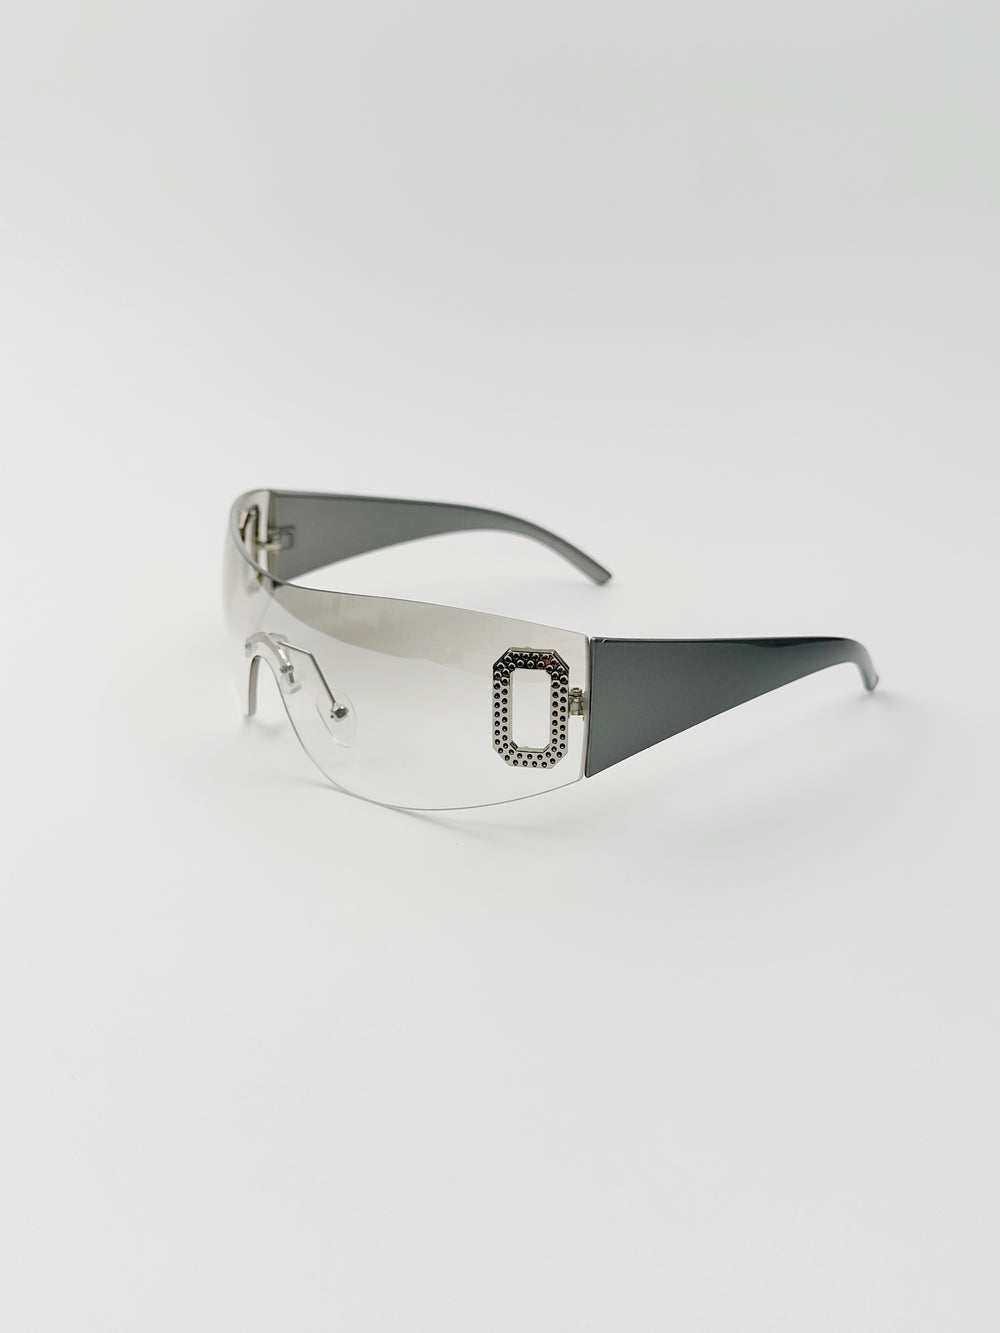 404 Shop Retro One-Piece Y-2k Sunglasses Millennium Sports Concave Shape Sun Glasses Men's and Women's UV Protection - bertofonsi